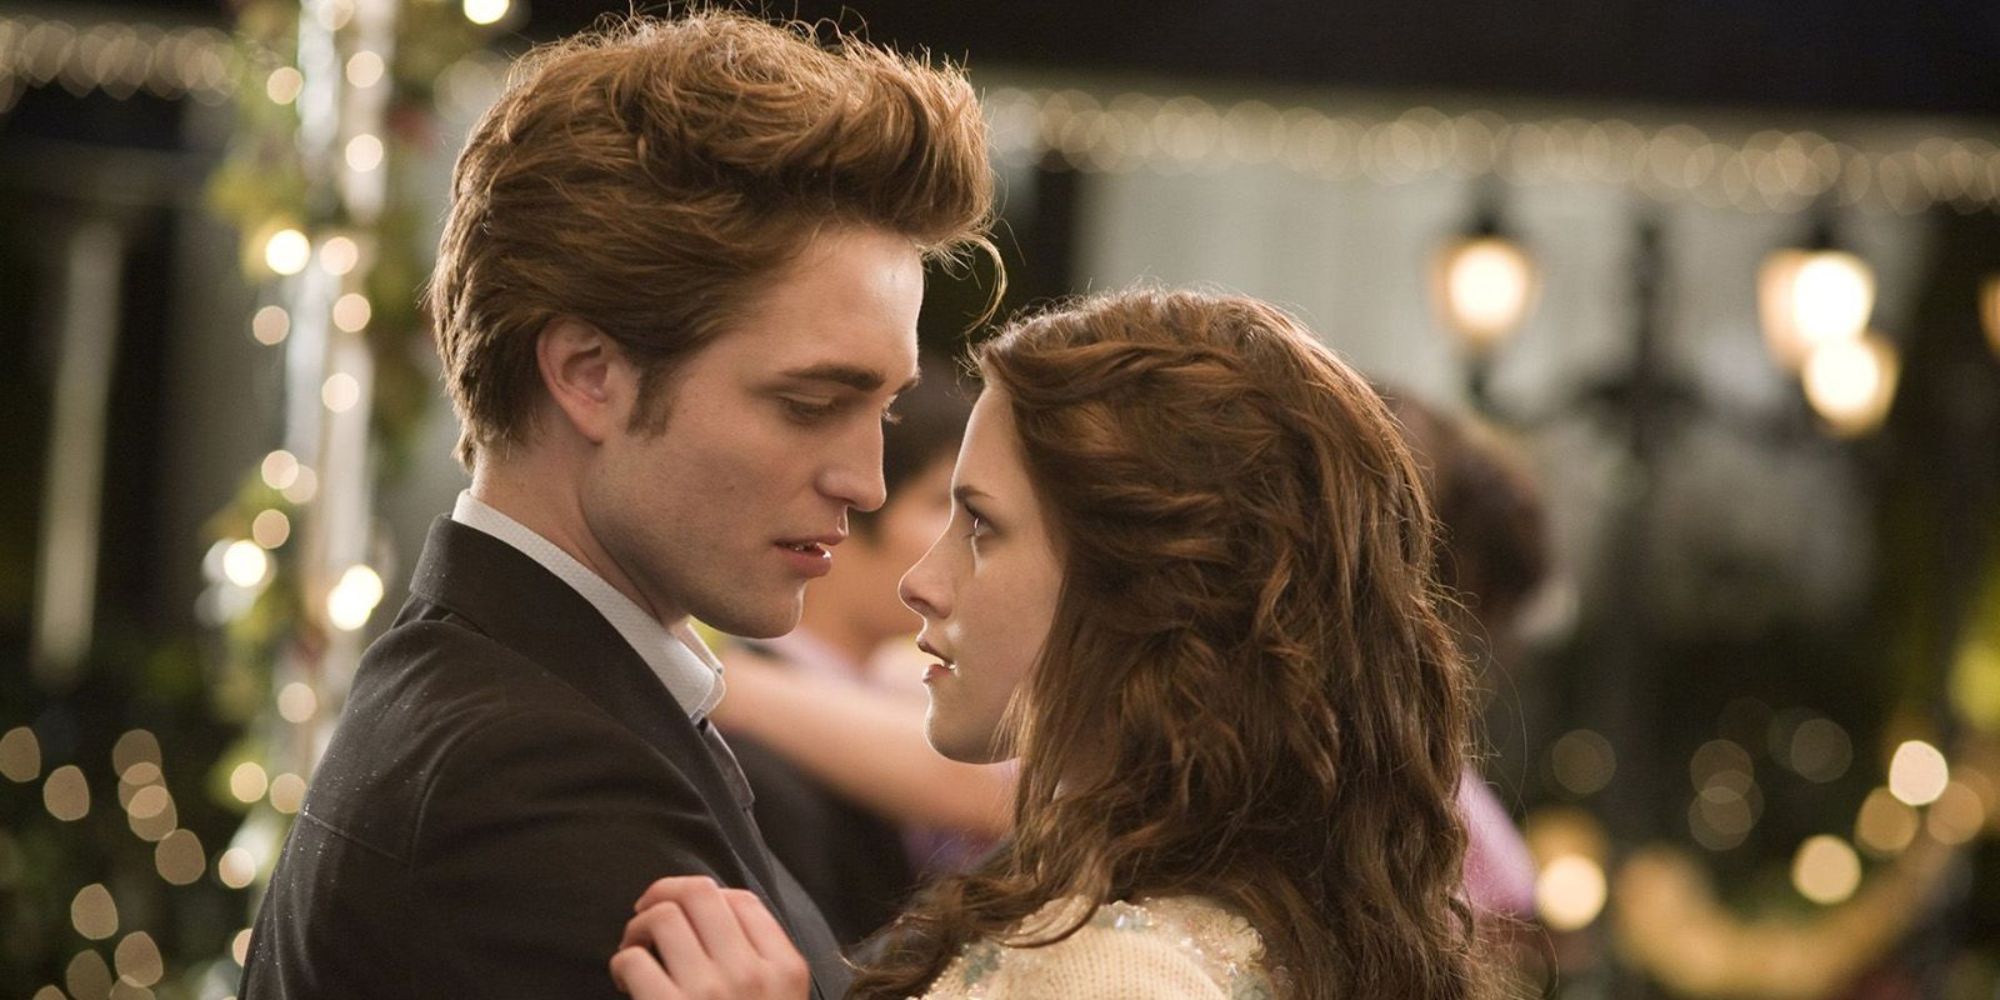 Robert Pattinson and Kristen Stewart slow dancing in Twilight